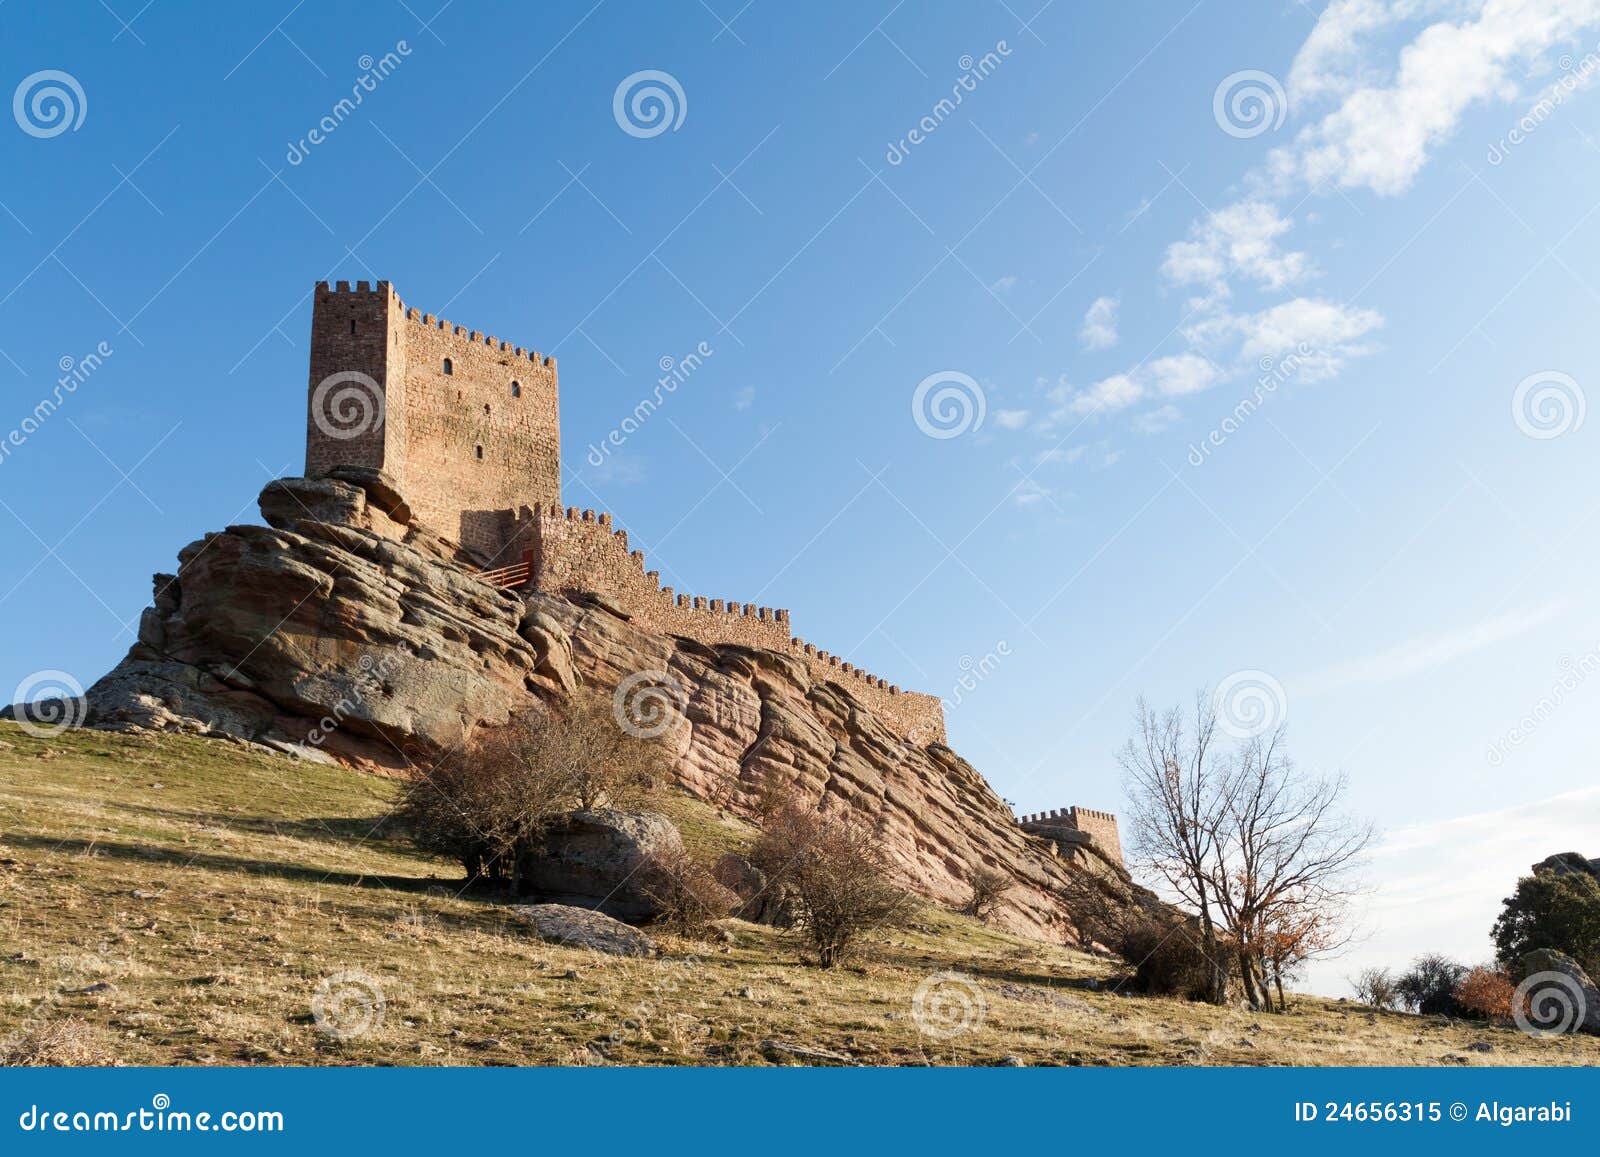 old castle in molina de aragon, spain